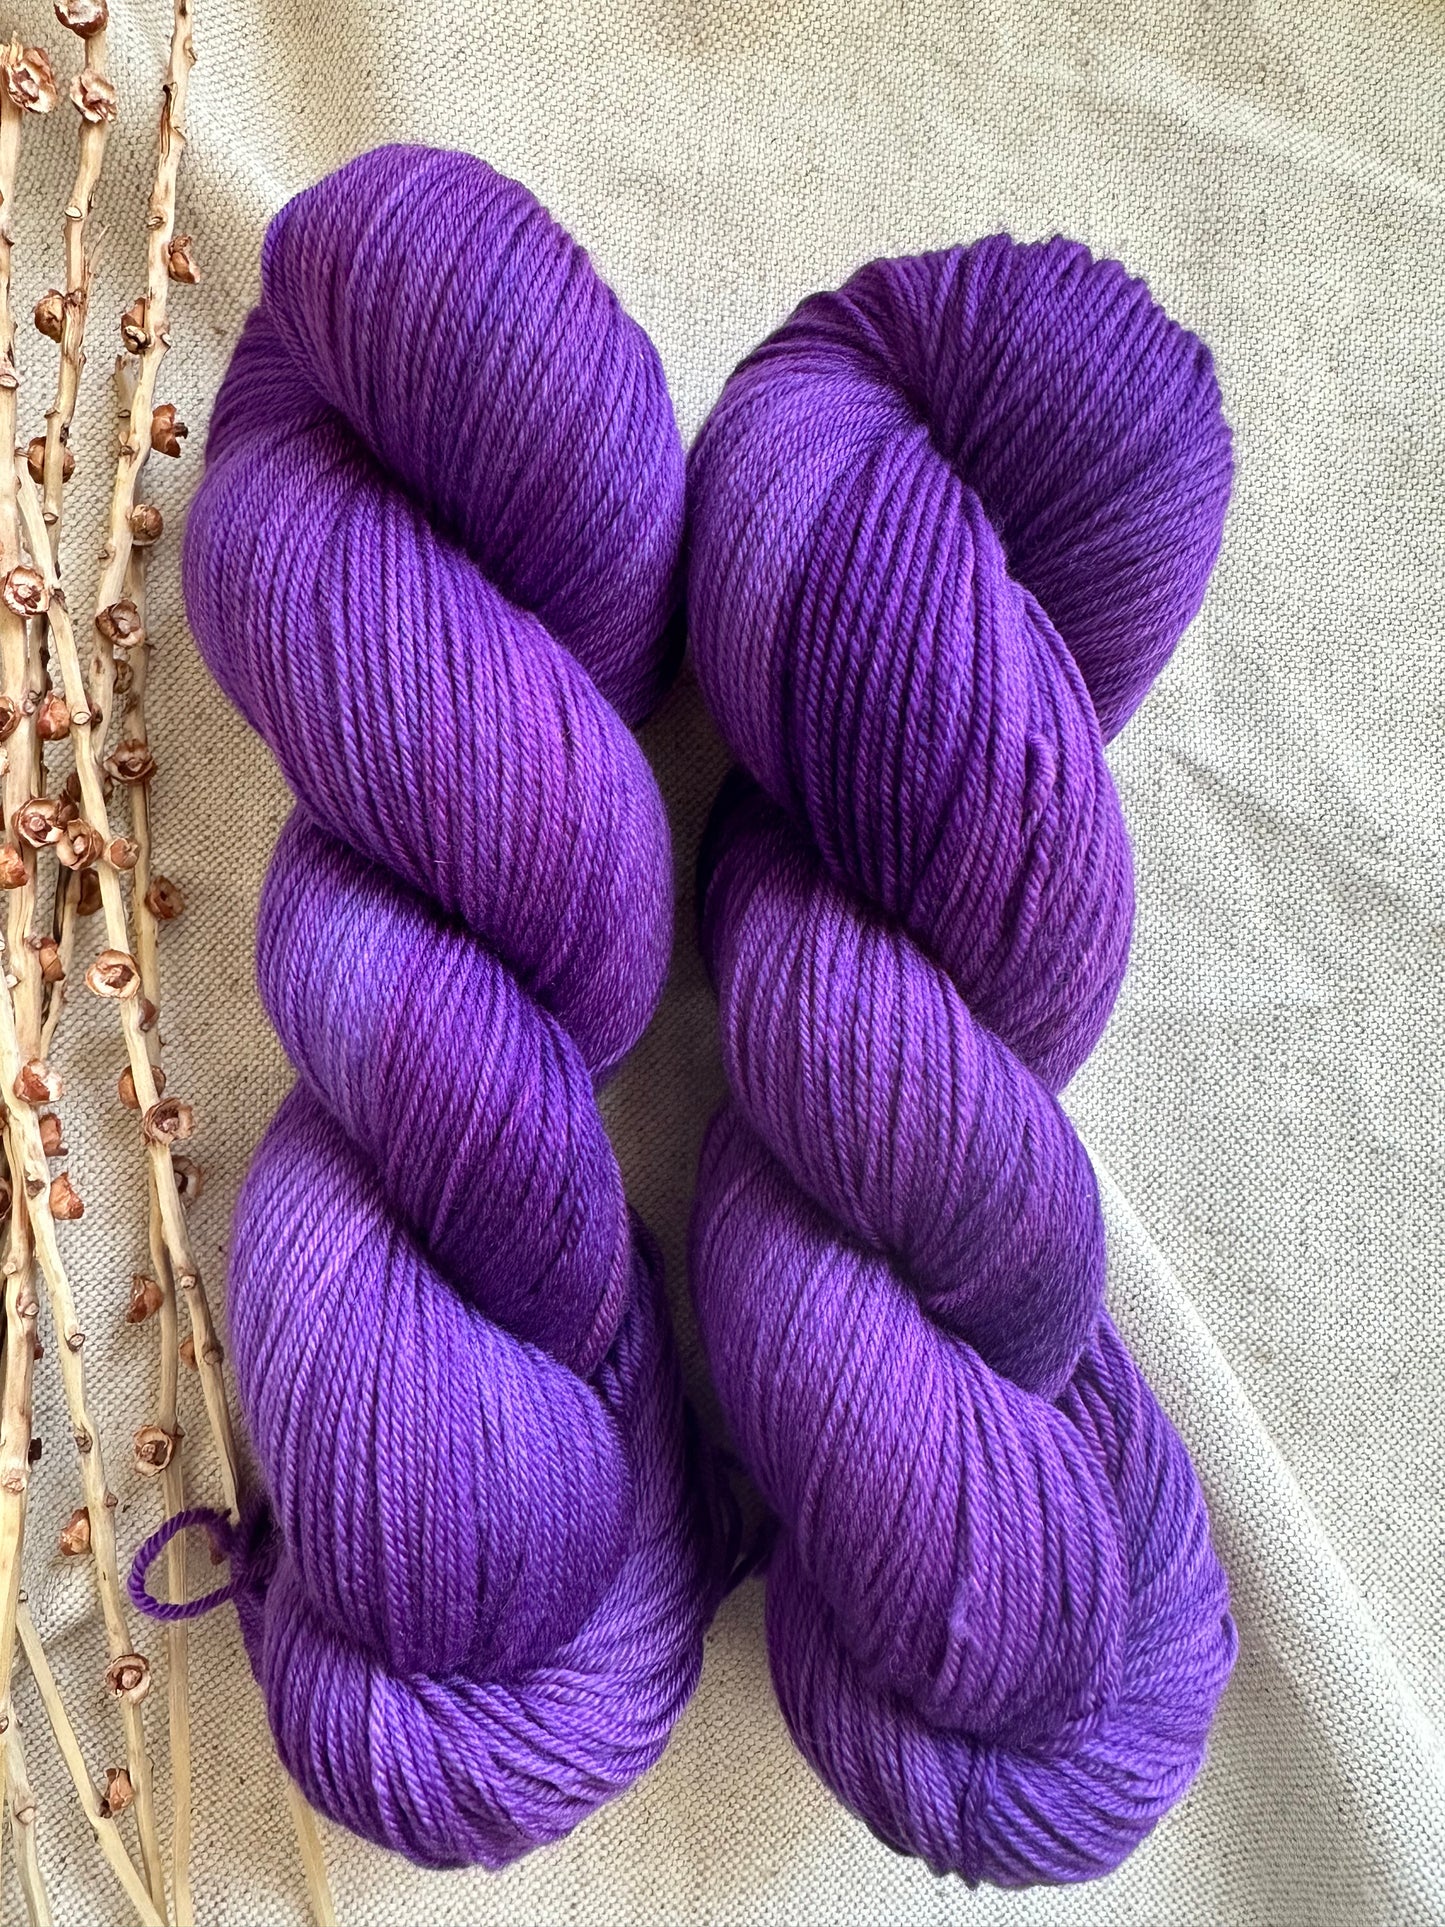 Shades of Purple 100g Skein